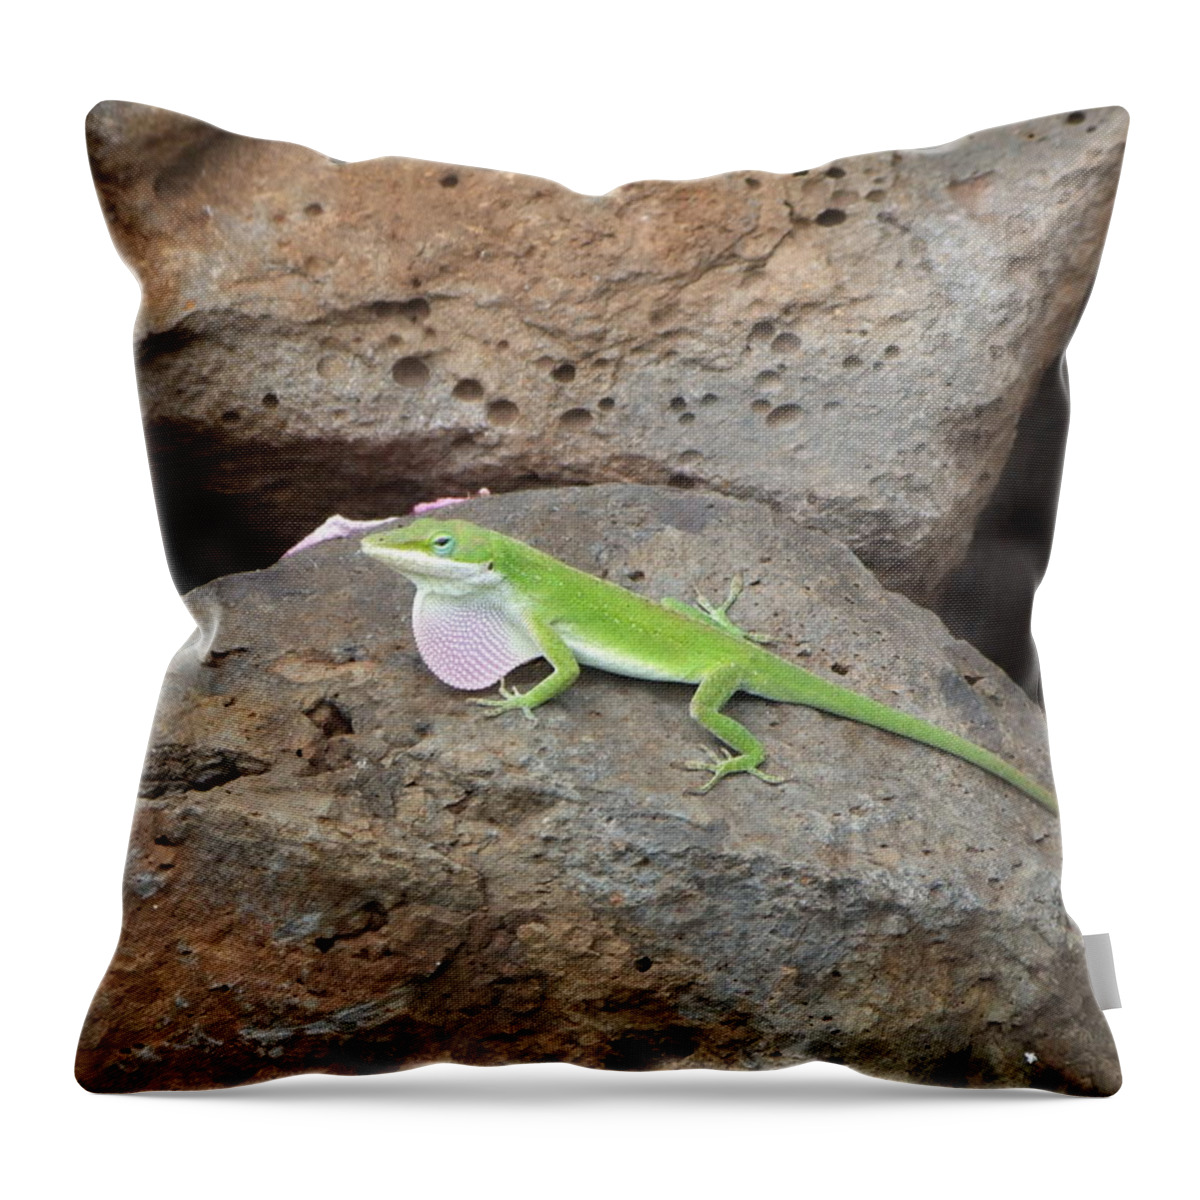 Lizard Throw Pillow featuring the photograph Green Lizard by Richard Reeve